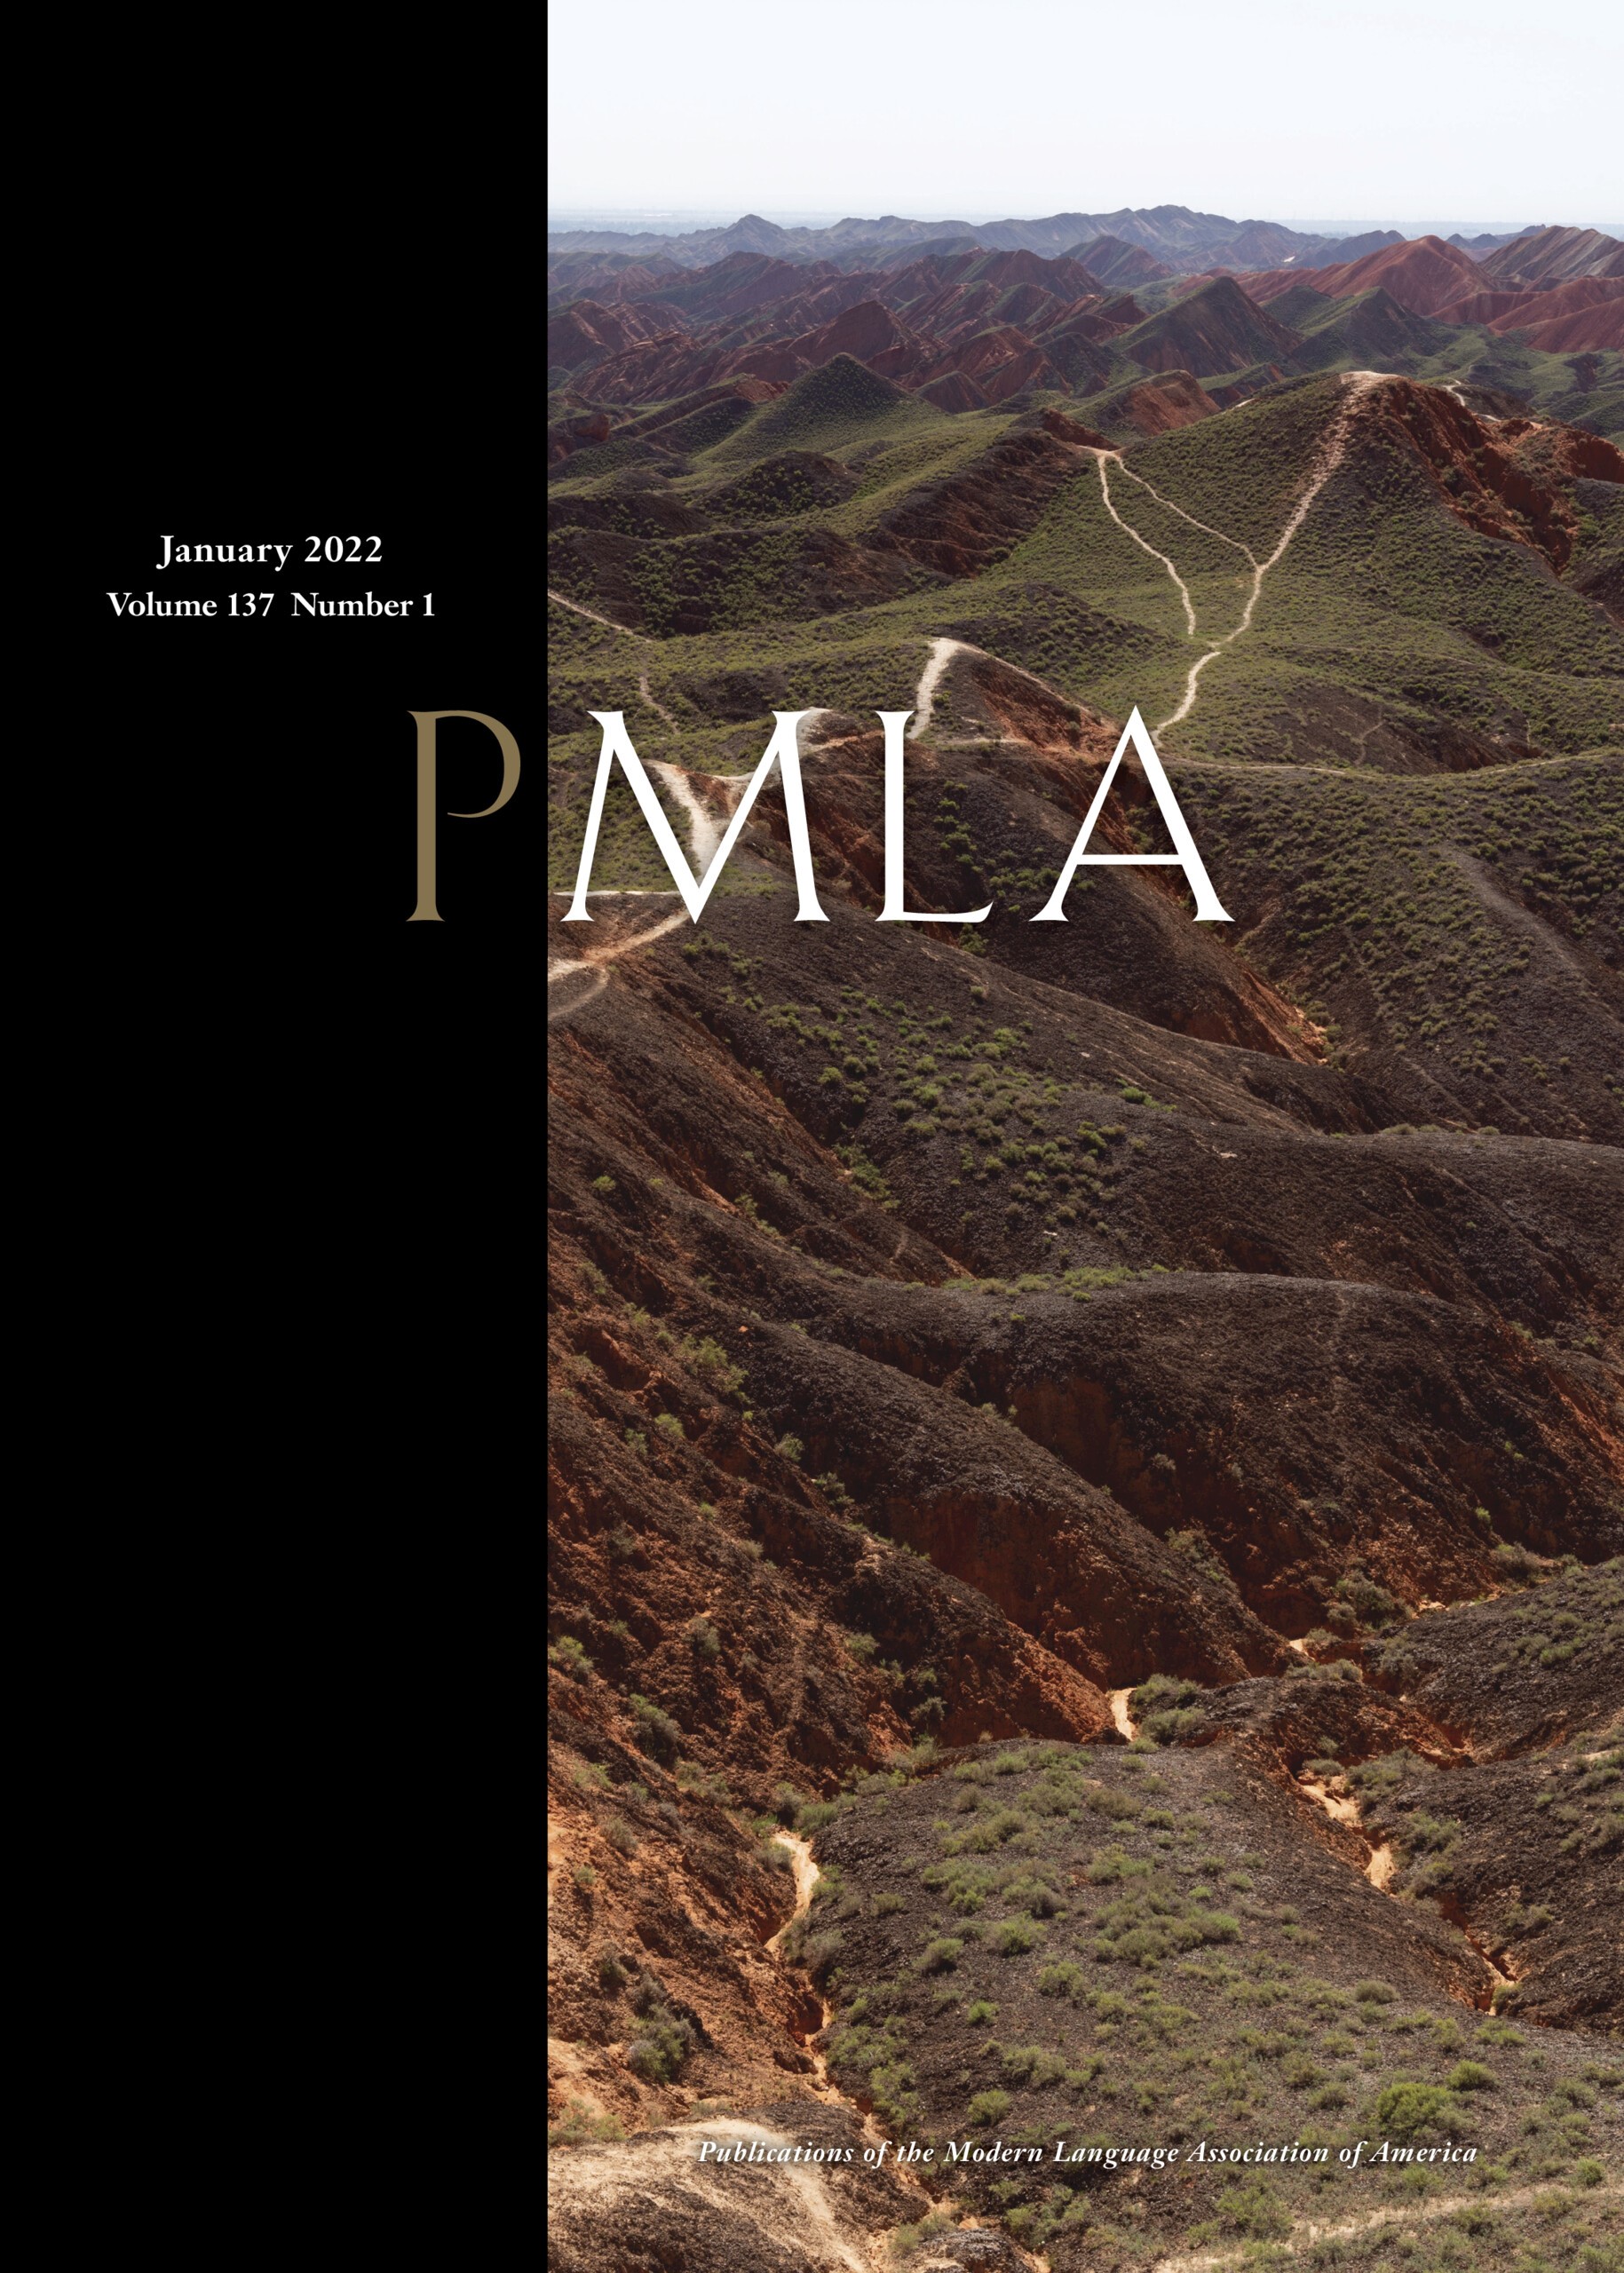 pmla-cover.jpg